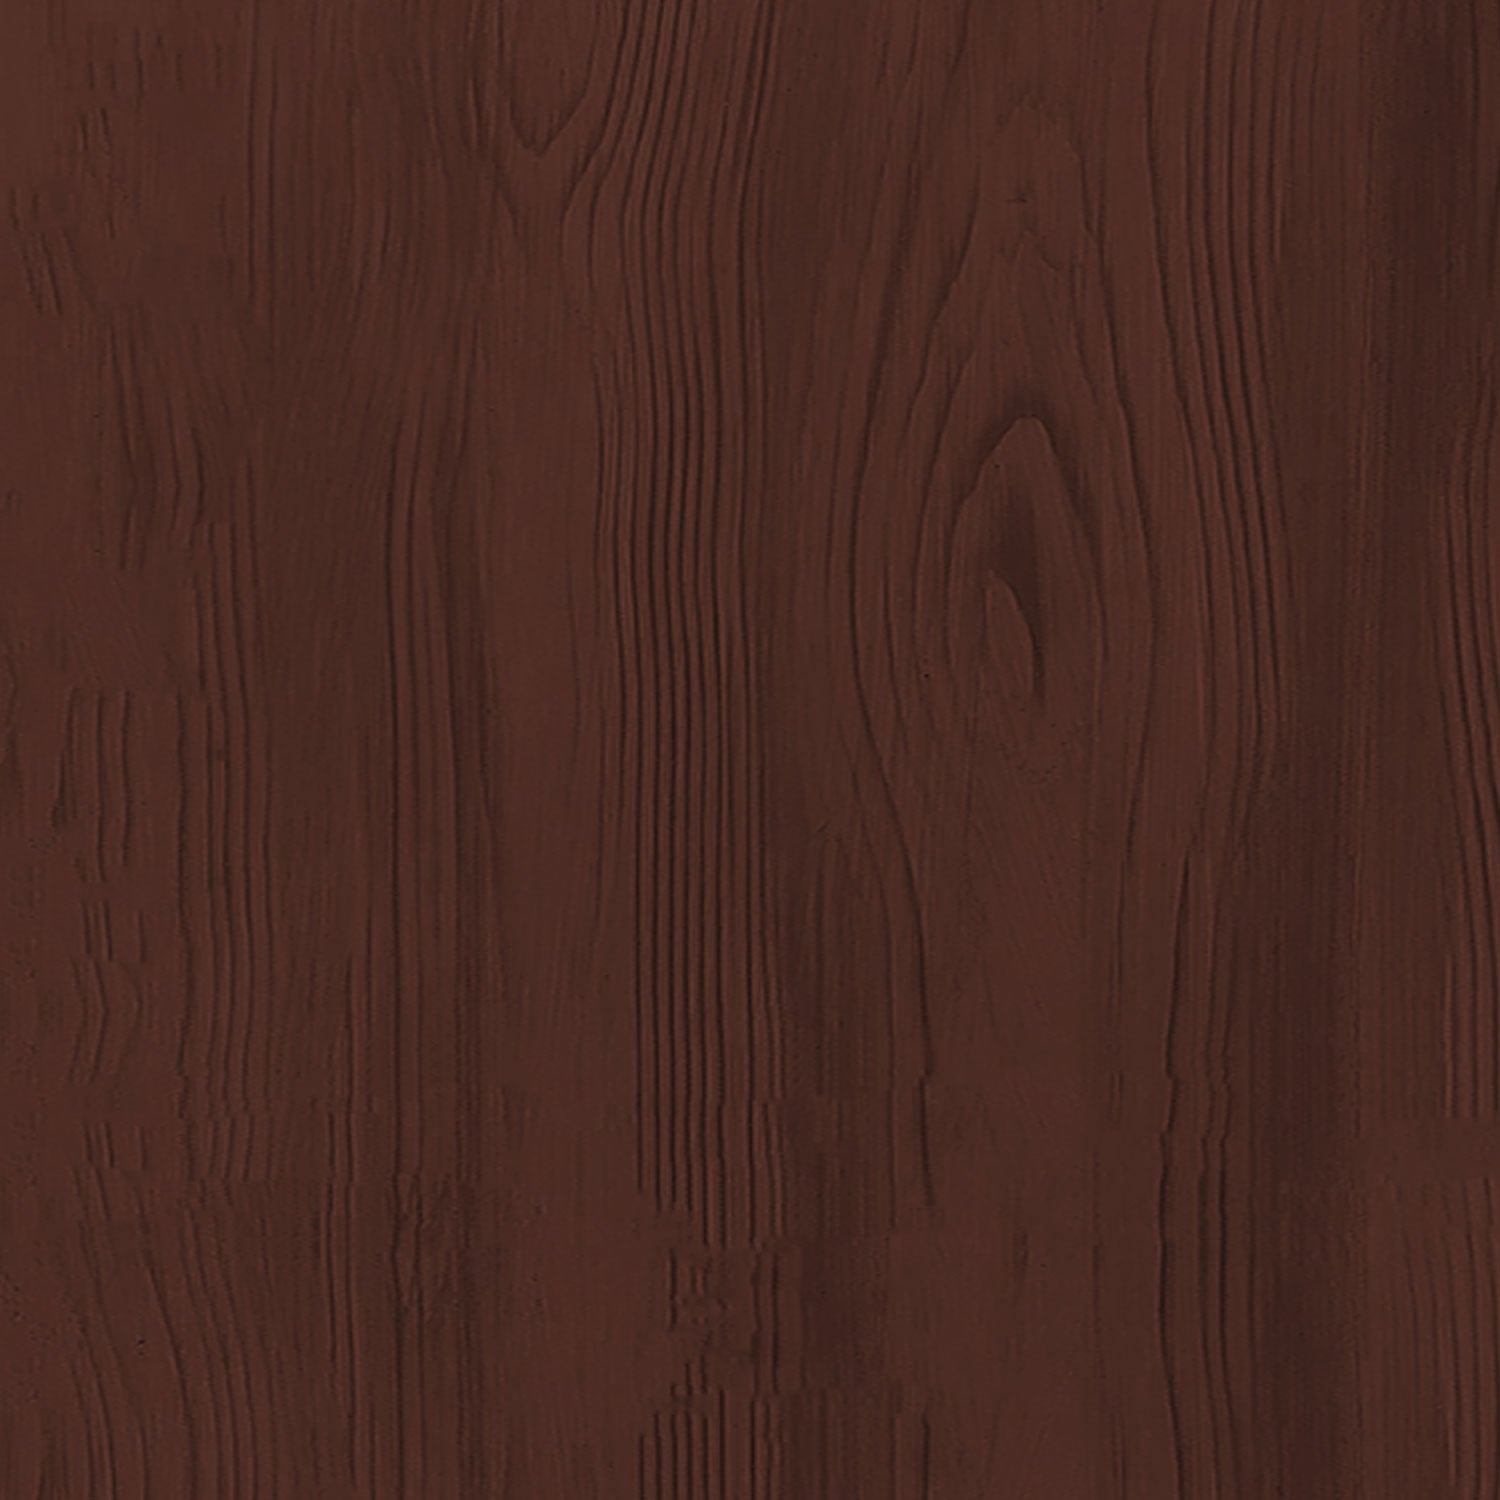 Multi-purpose Wood'n Kit (Med) - Red Mahogany - Exterior Top Coat